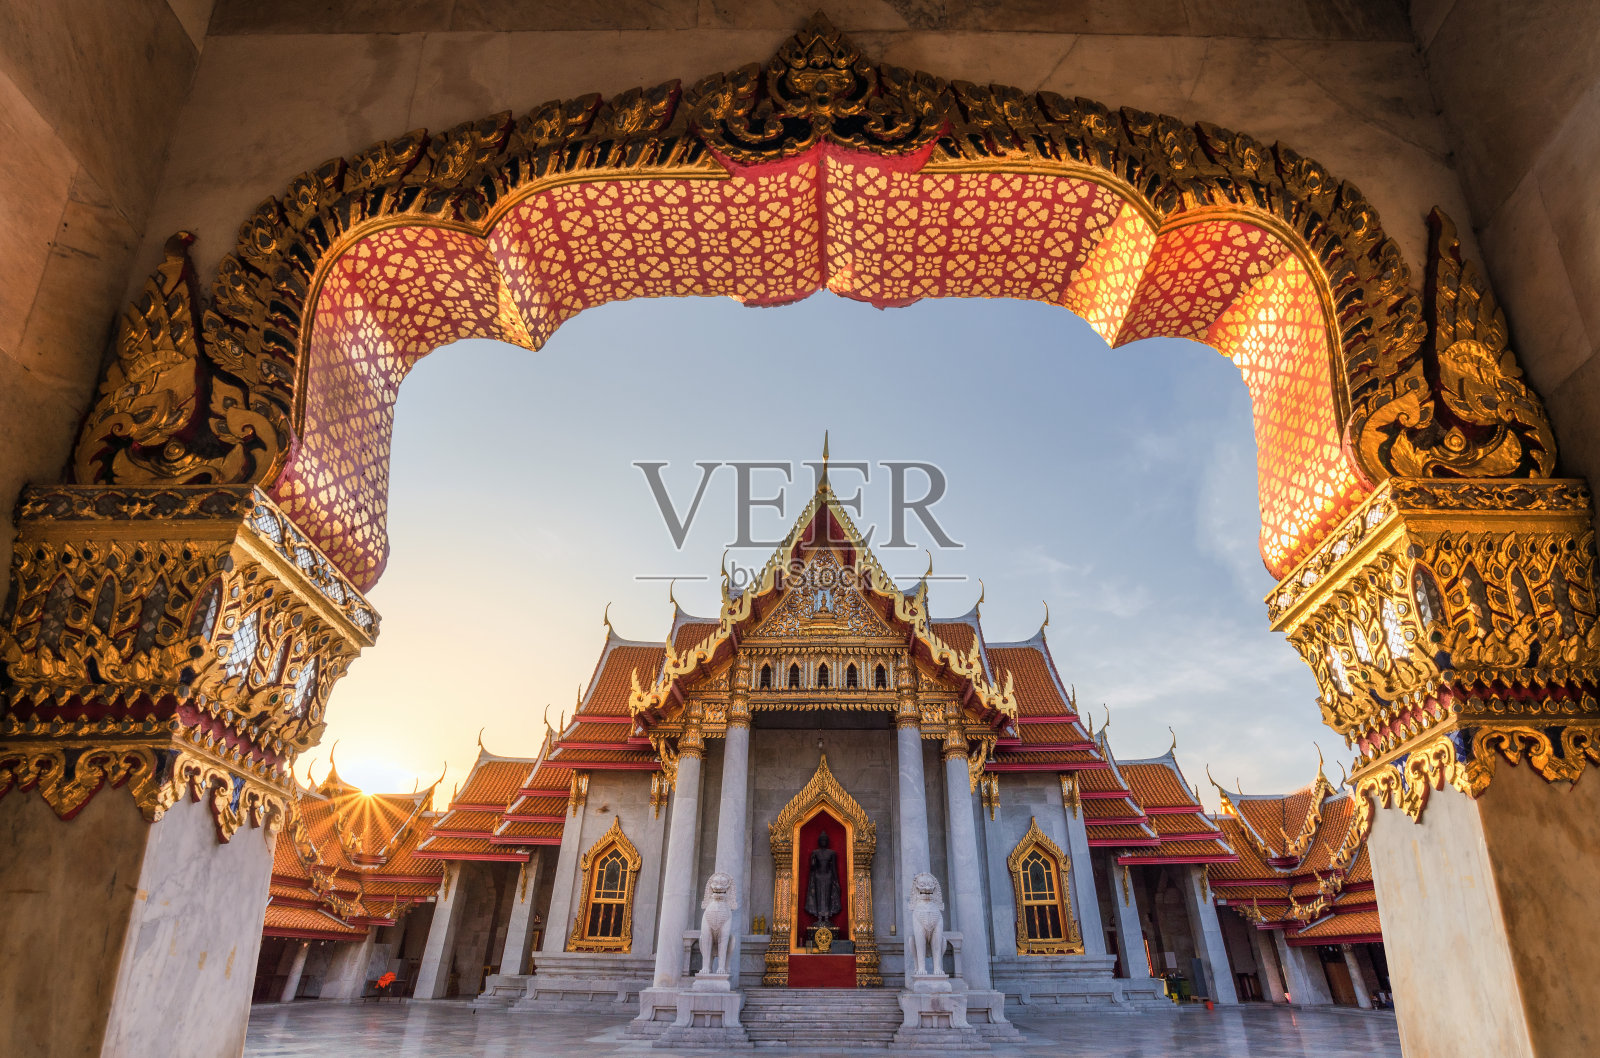 泰国曼谷的大理石寺庙，美丽而著名的寺庙。曼谷最现代化和最美丽的皇家宫殿之一，Wat Benchamabophit也以其使用欧洲设计而闻名。照片摄影图片